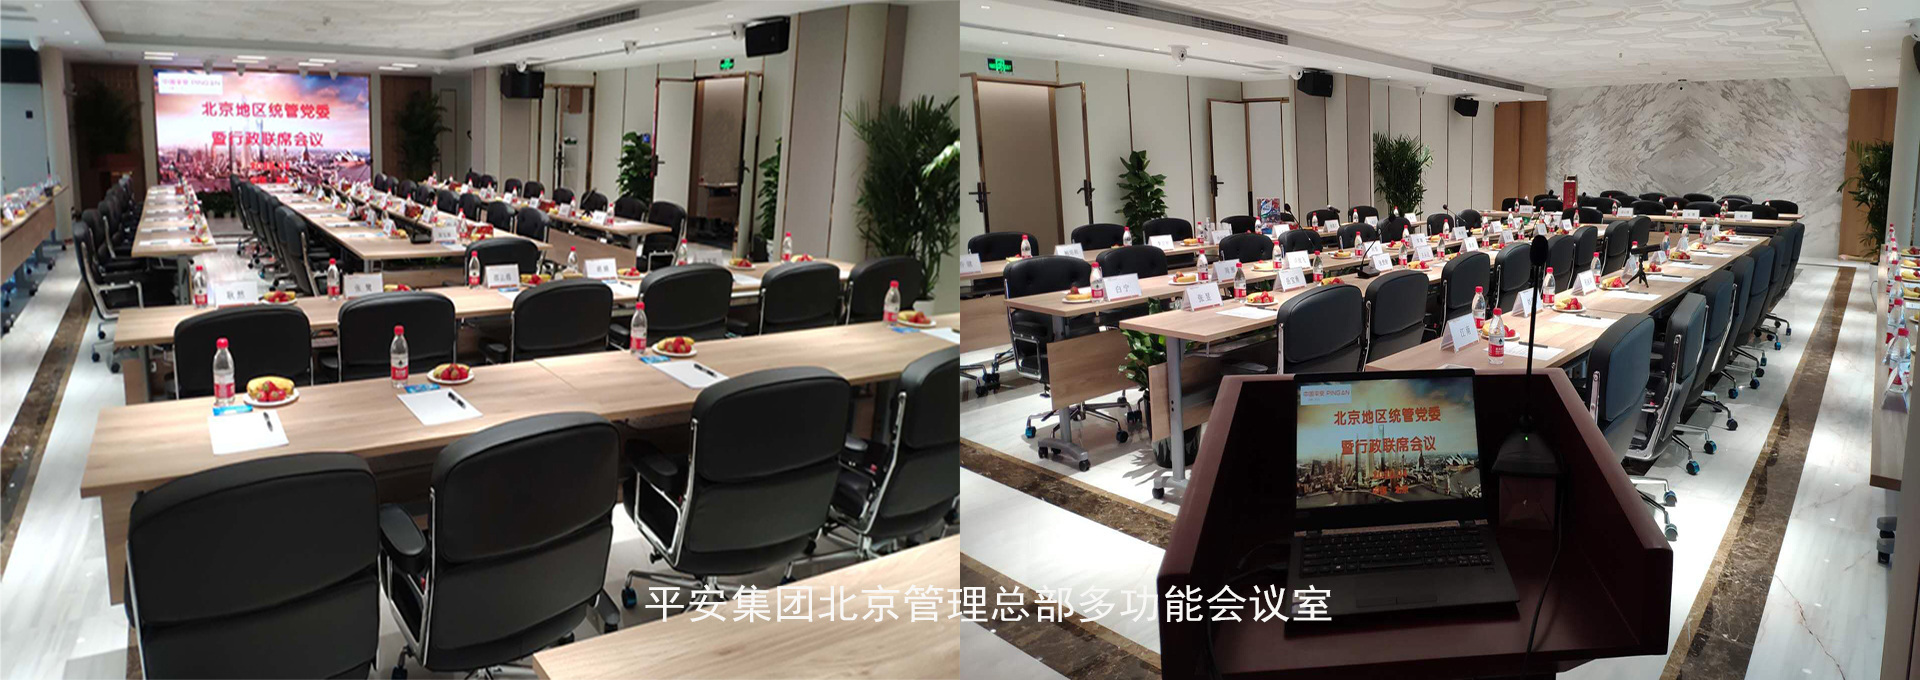 平安集团北京管理总部多功能会议室